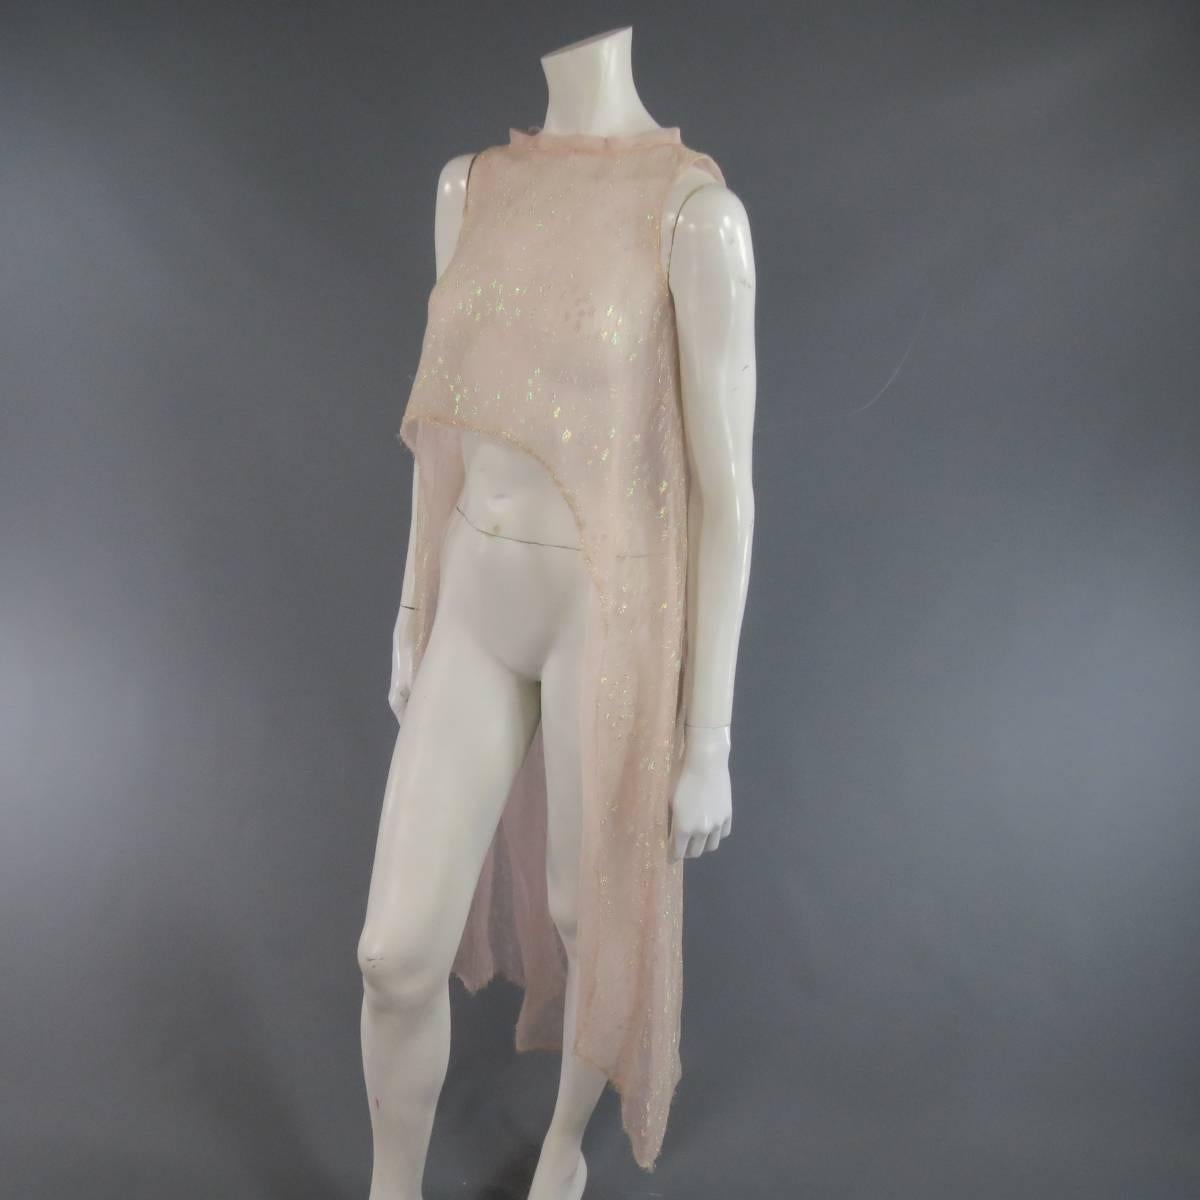 MONIQUE LHUILLIER Size 4 Pink Iridescent Lace Strapless Two Piece Cape Dress 3